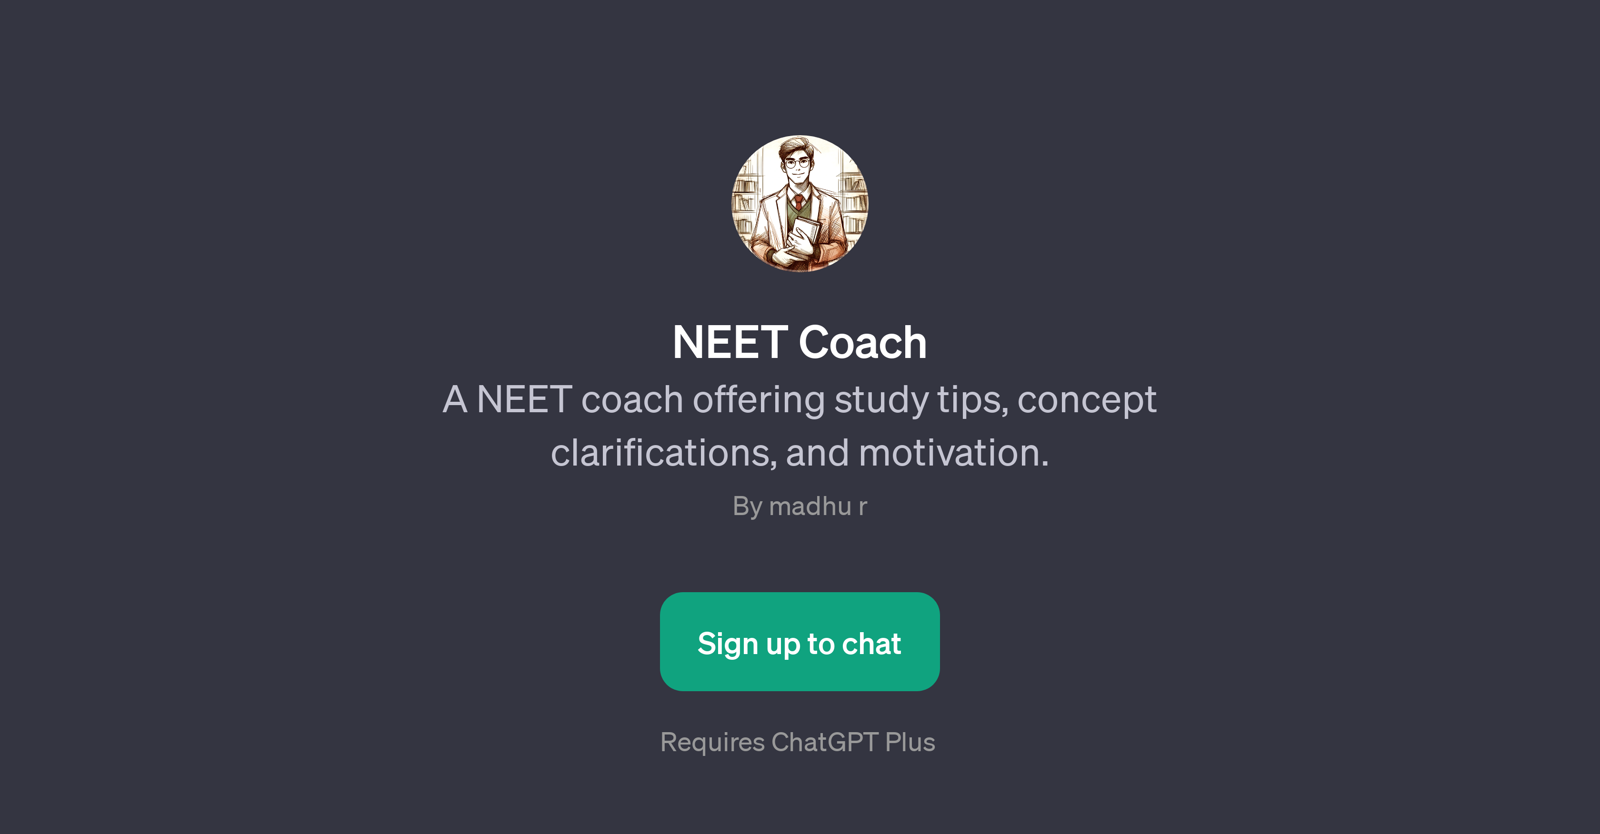 NEET Coach website